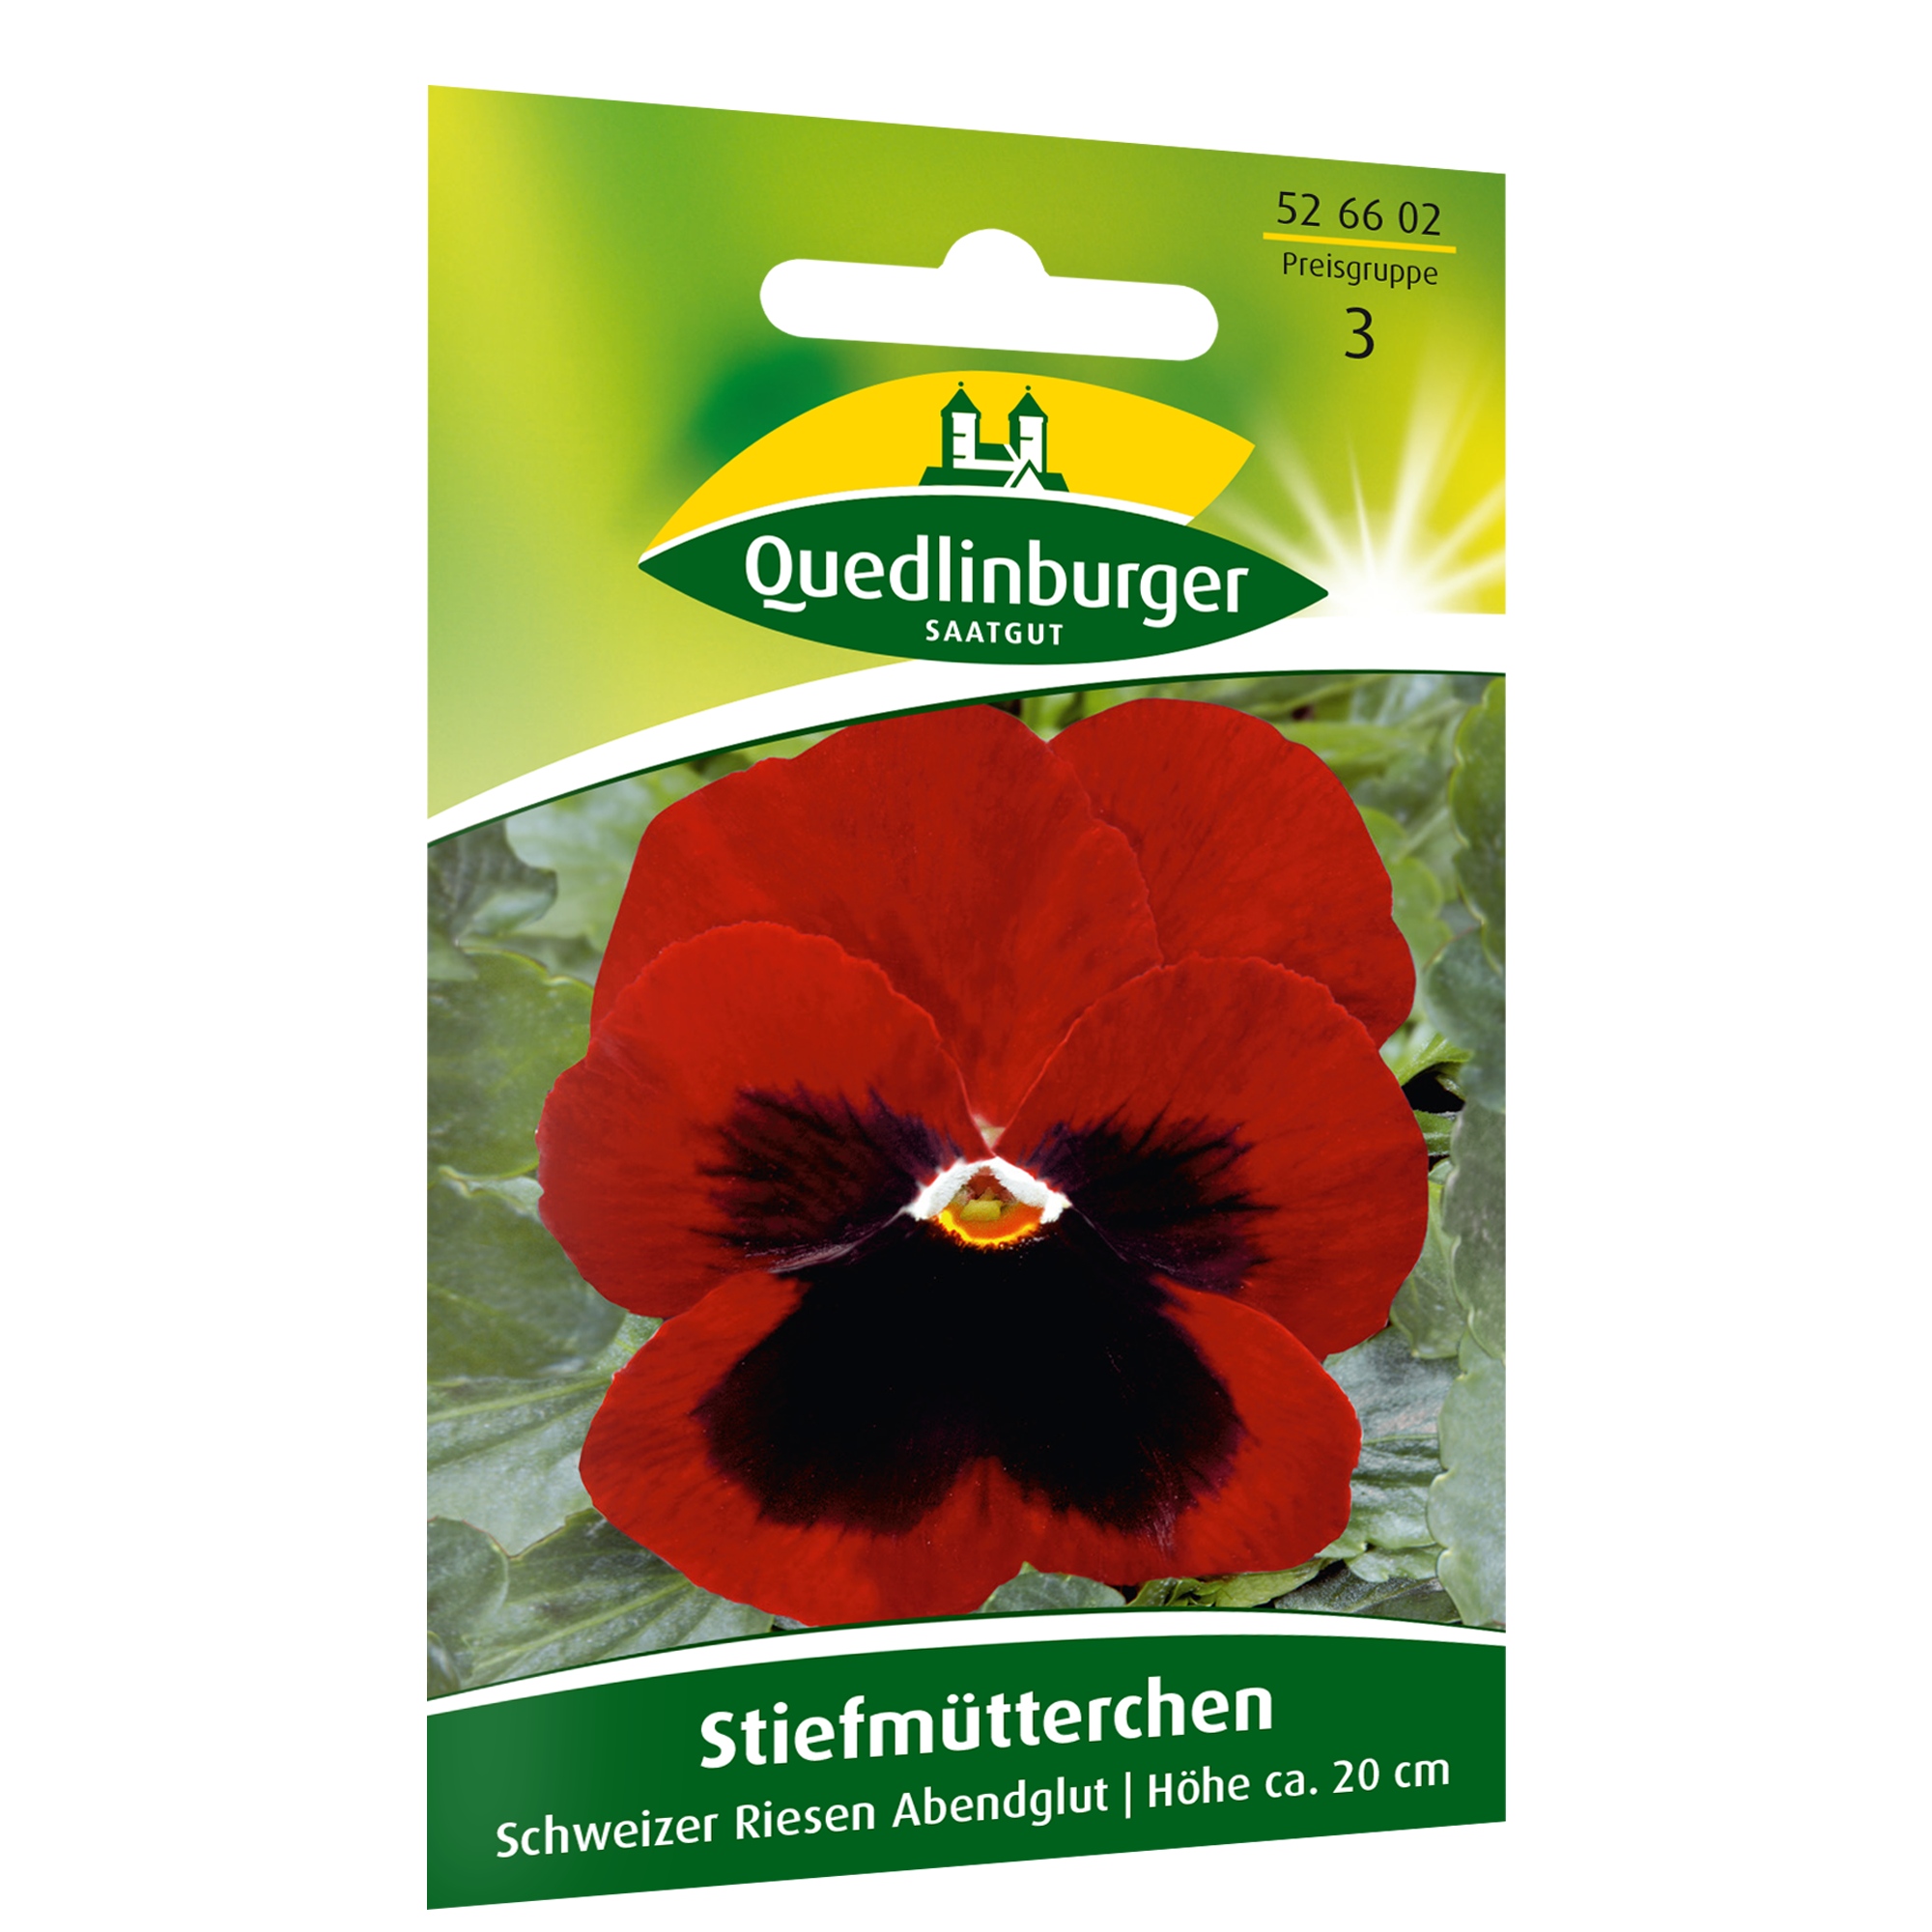 Stiefmütterchen 'Schweizer Riese Abendglut' + product picture